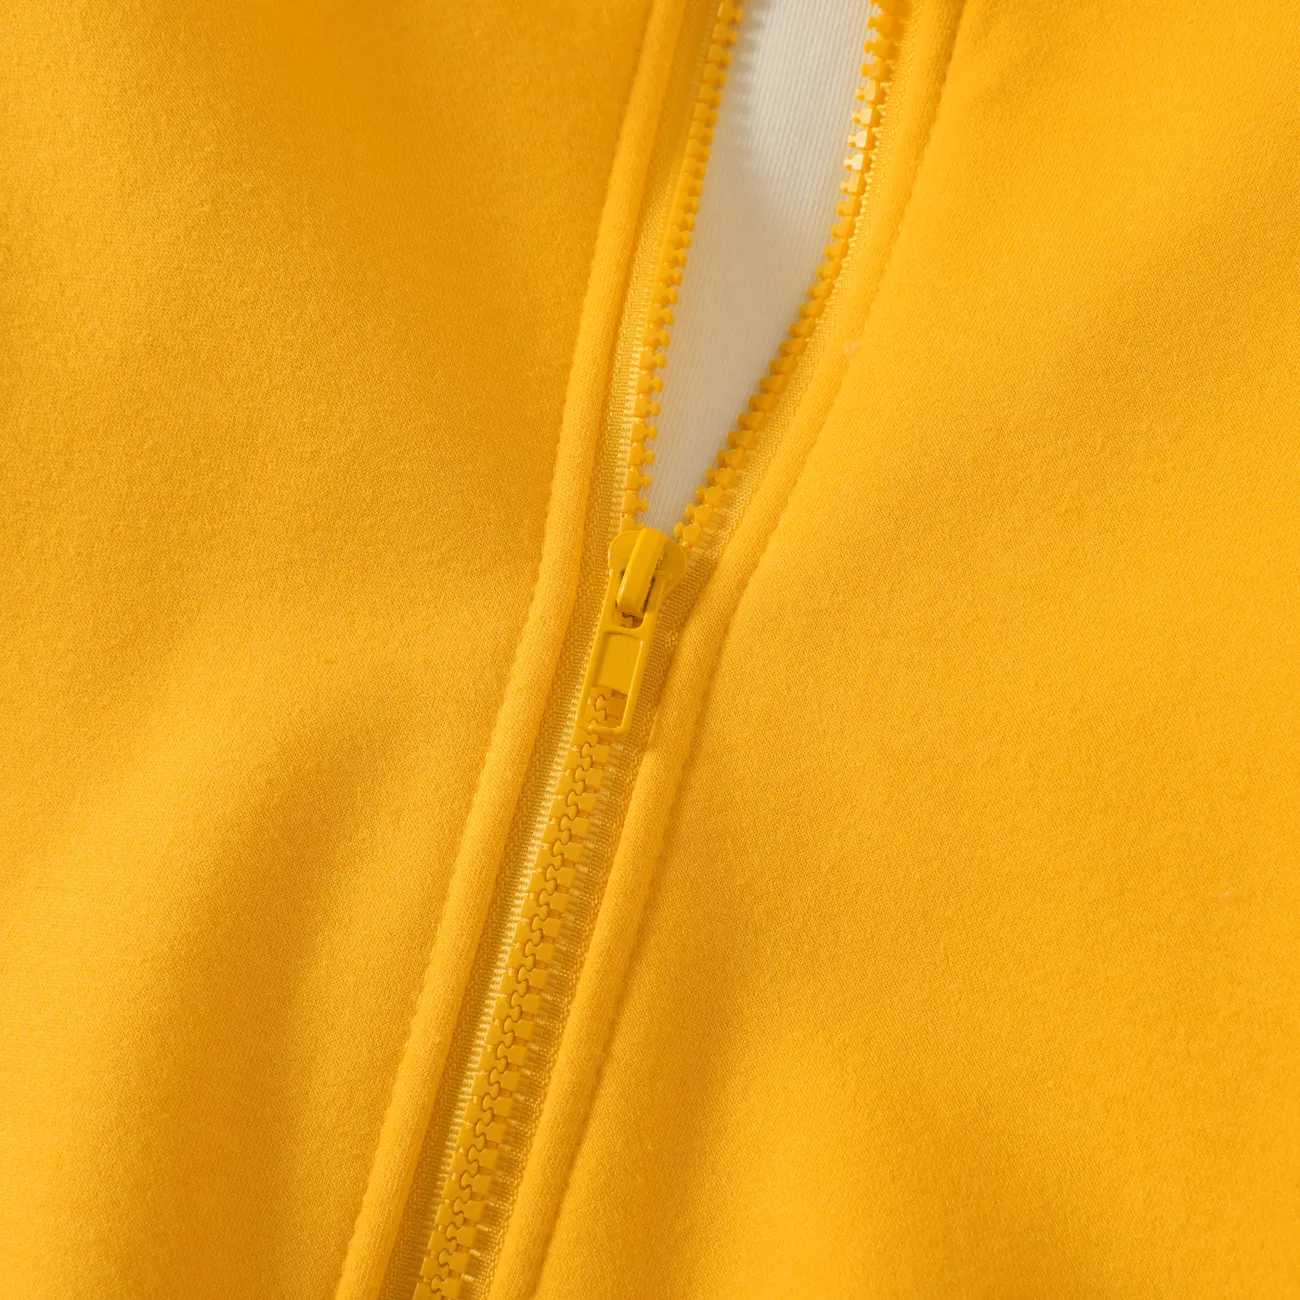 Kinder Unisex Reißverschluss Unifarben Mäntel/Jacken gelb big image 1